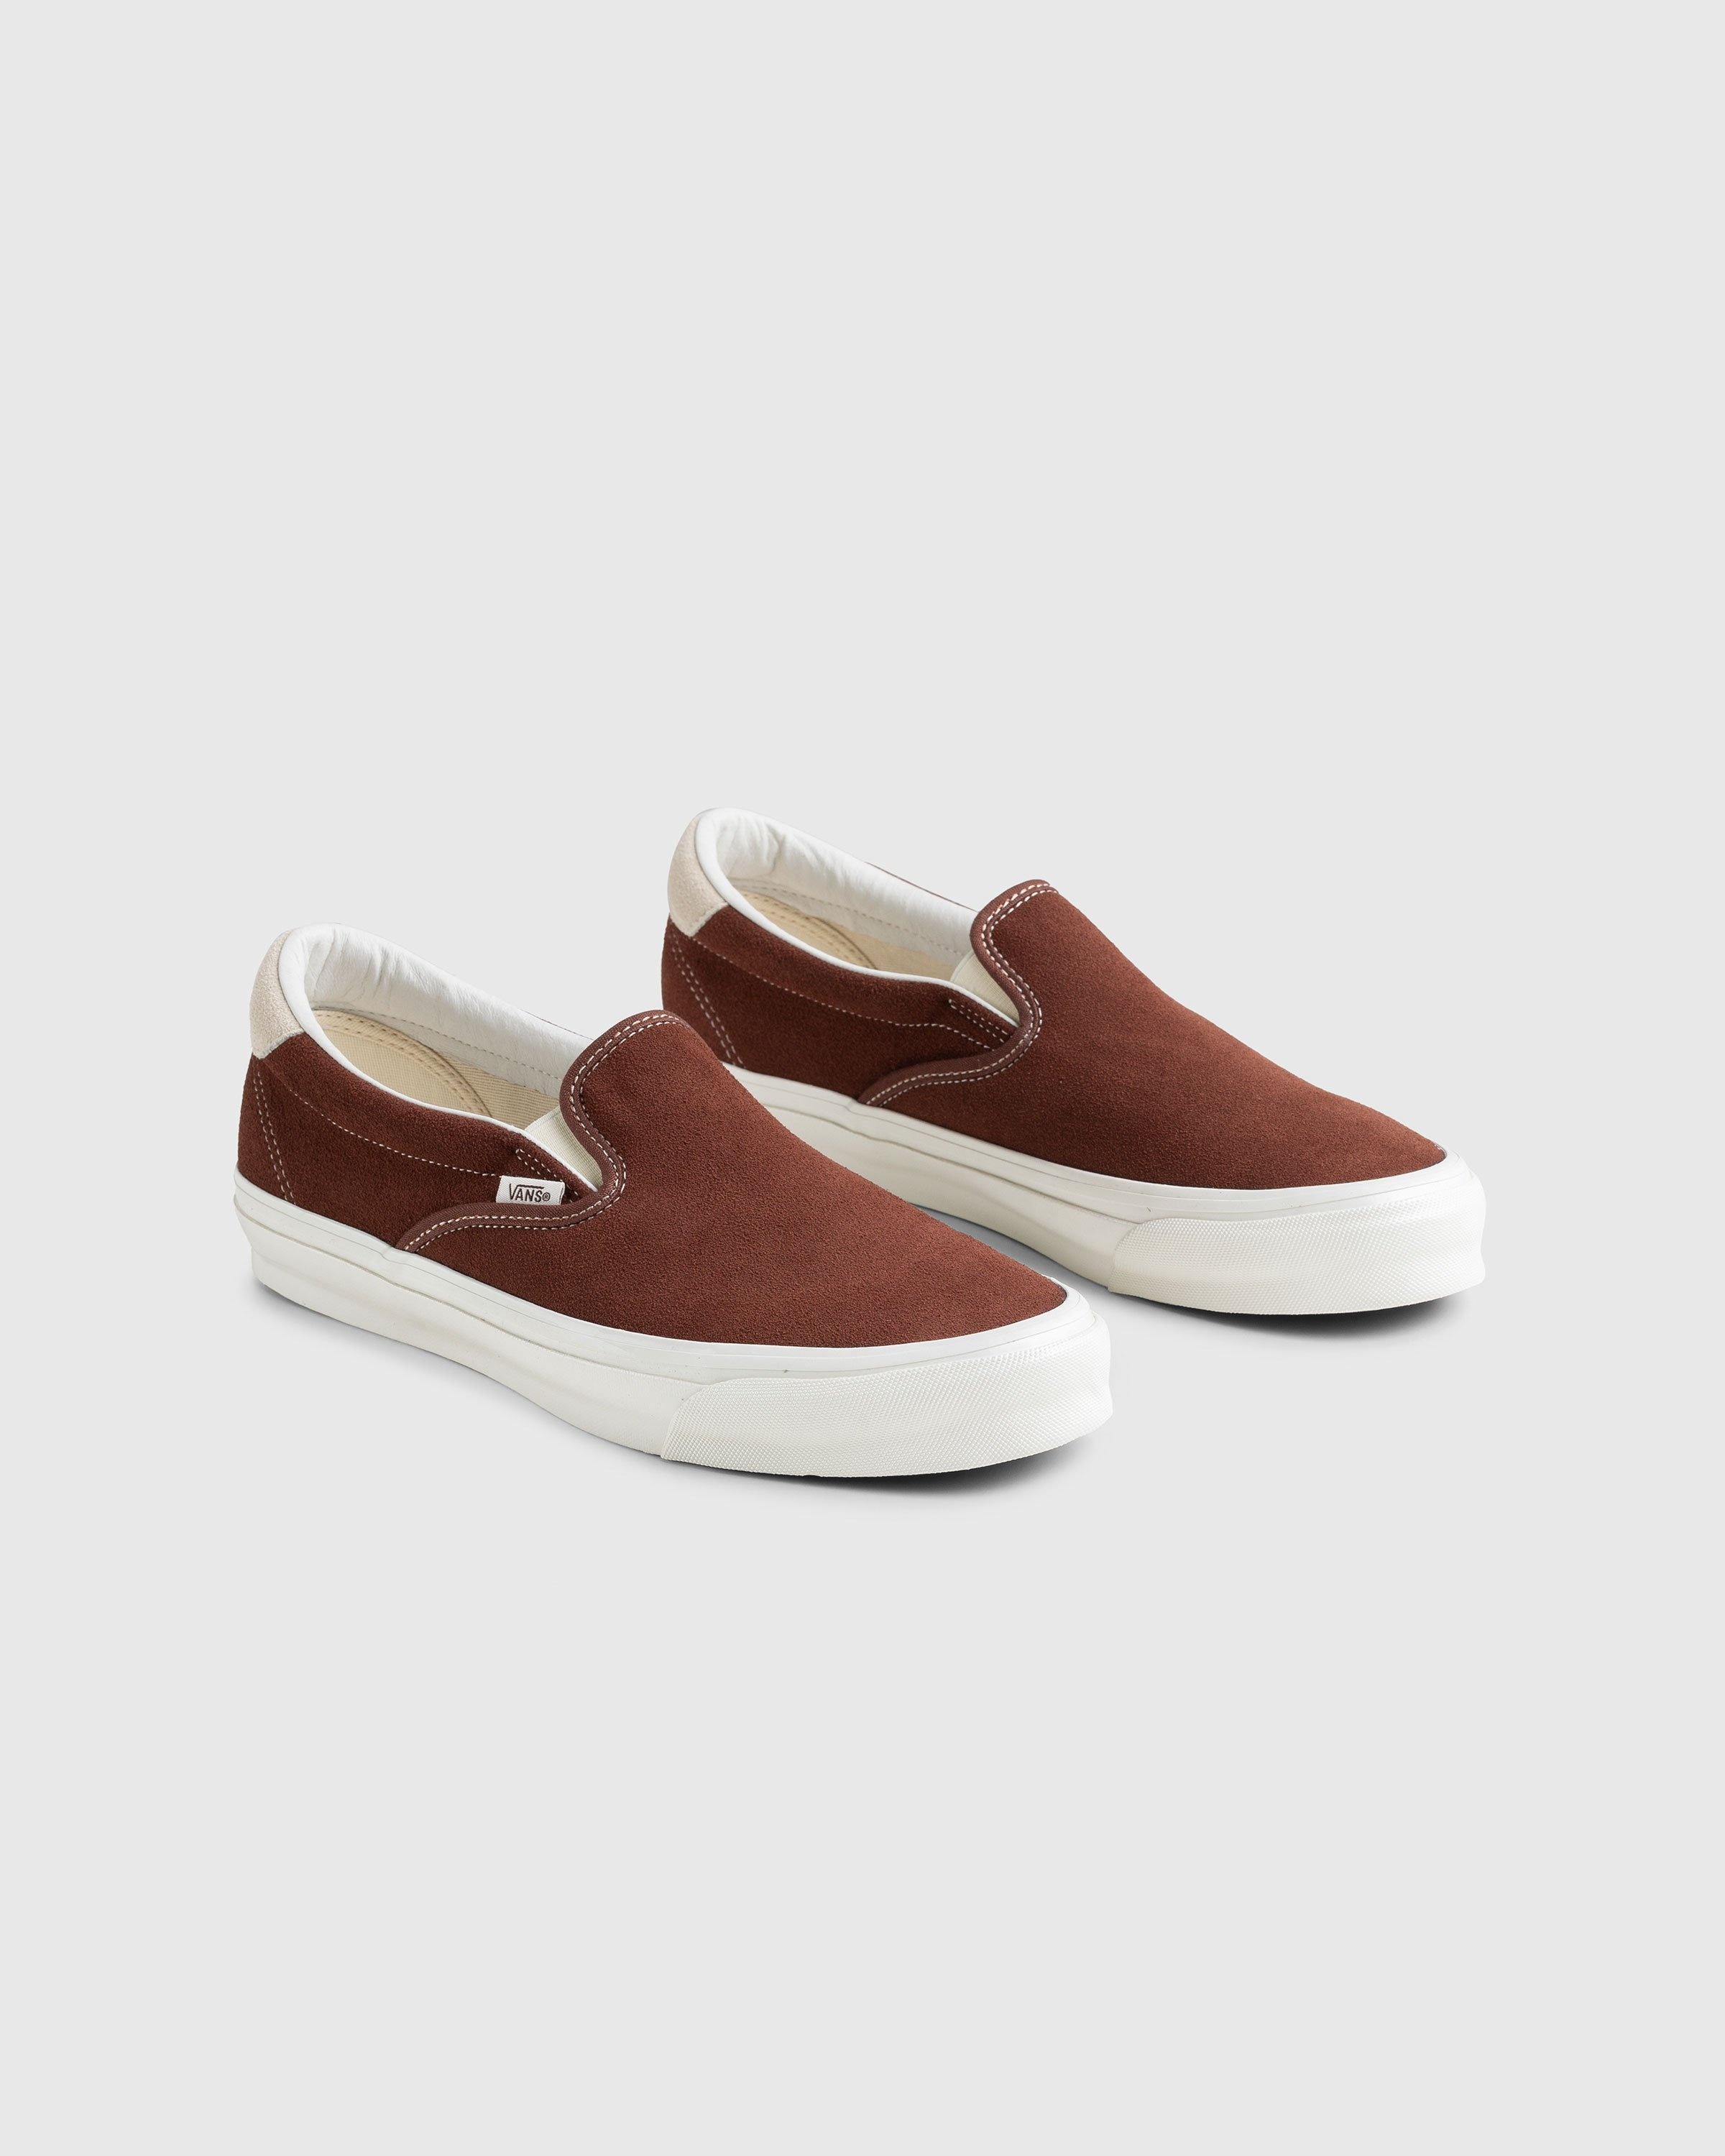 Vans – OG Slip-On 59 LX Suede Brown - Sneakers - Brown - Image 3